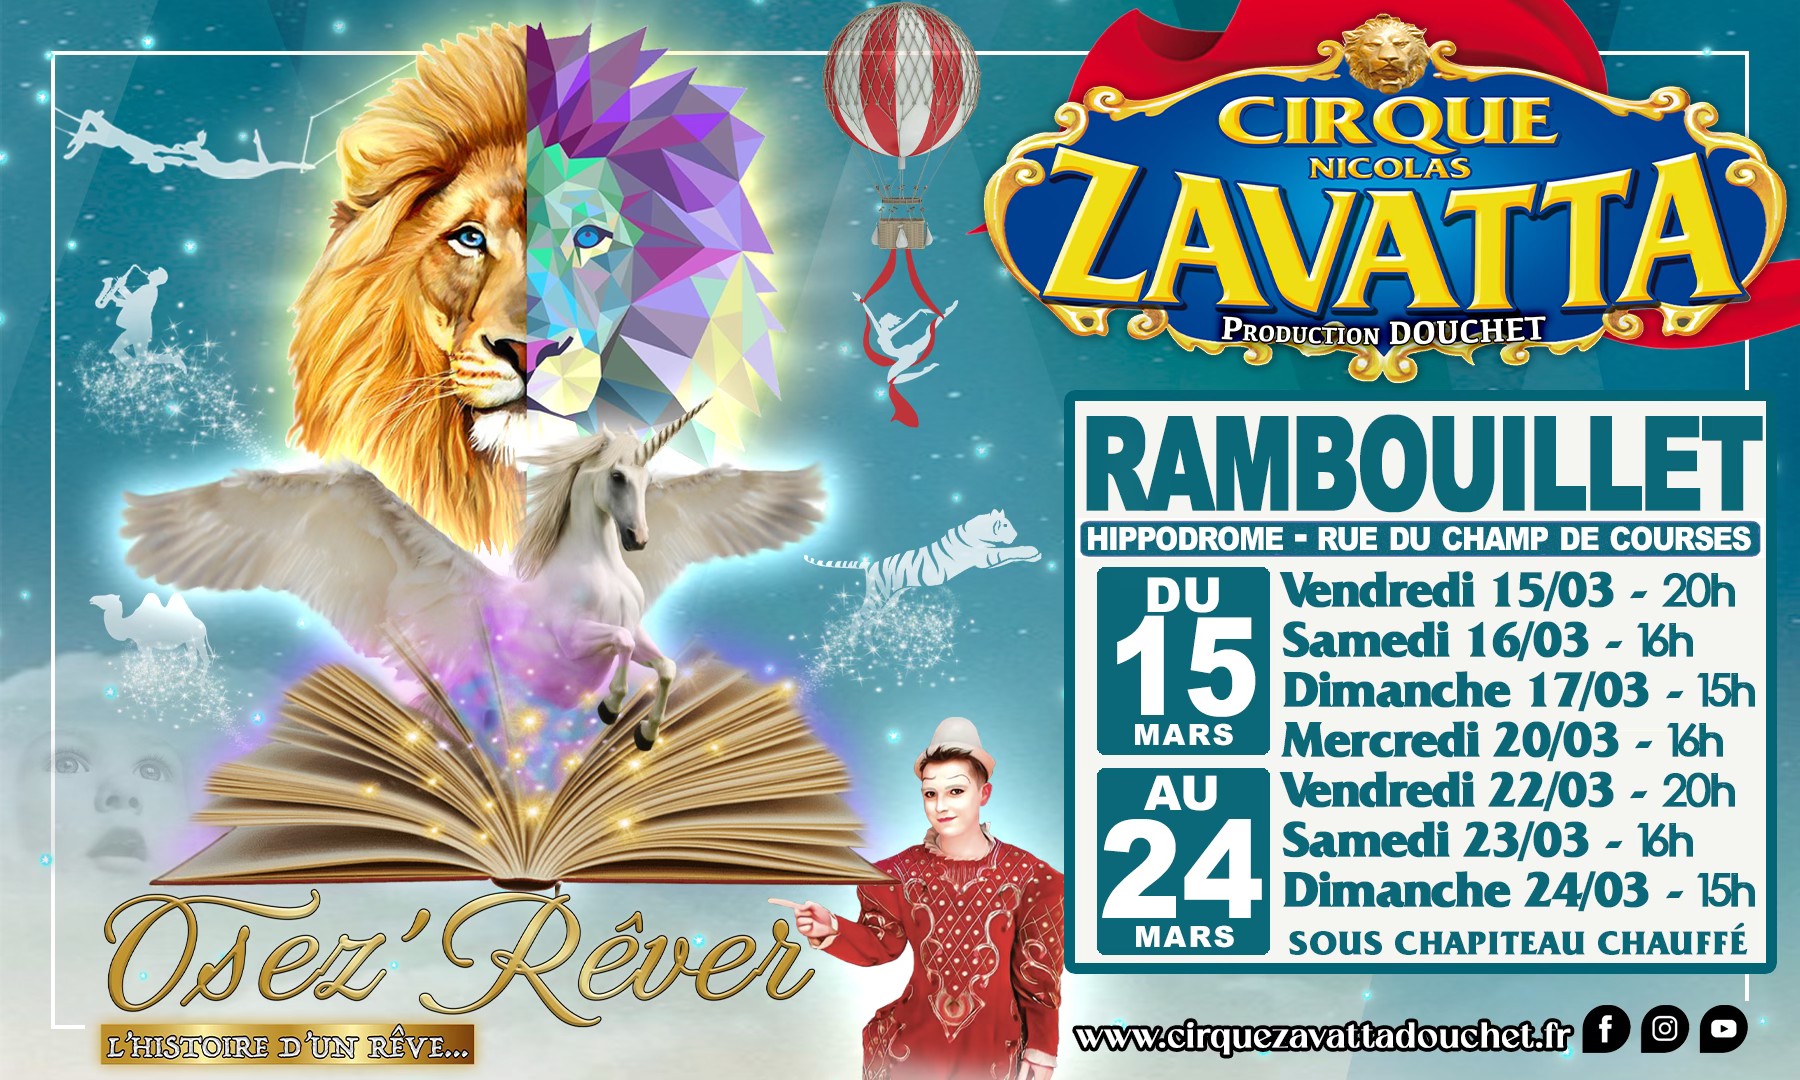 Zavatta douchet circus - Rambouillet Tourist Office